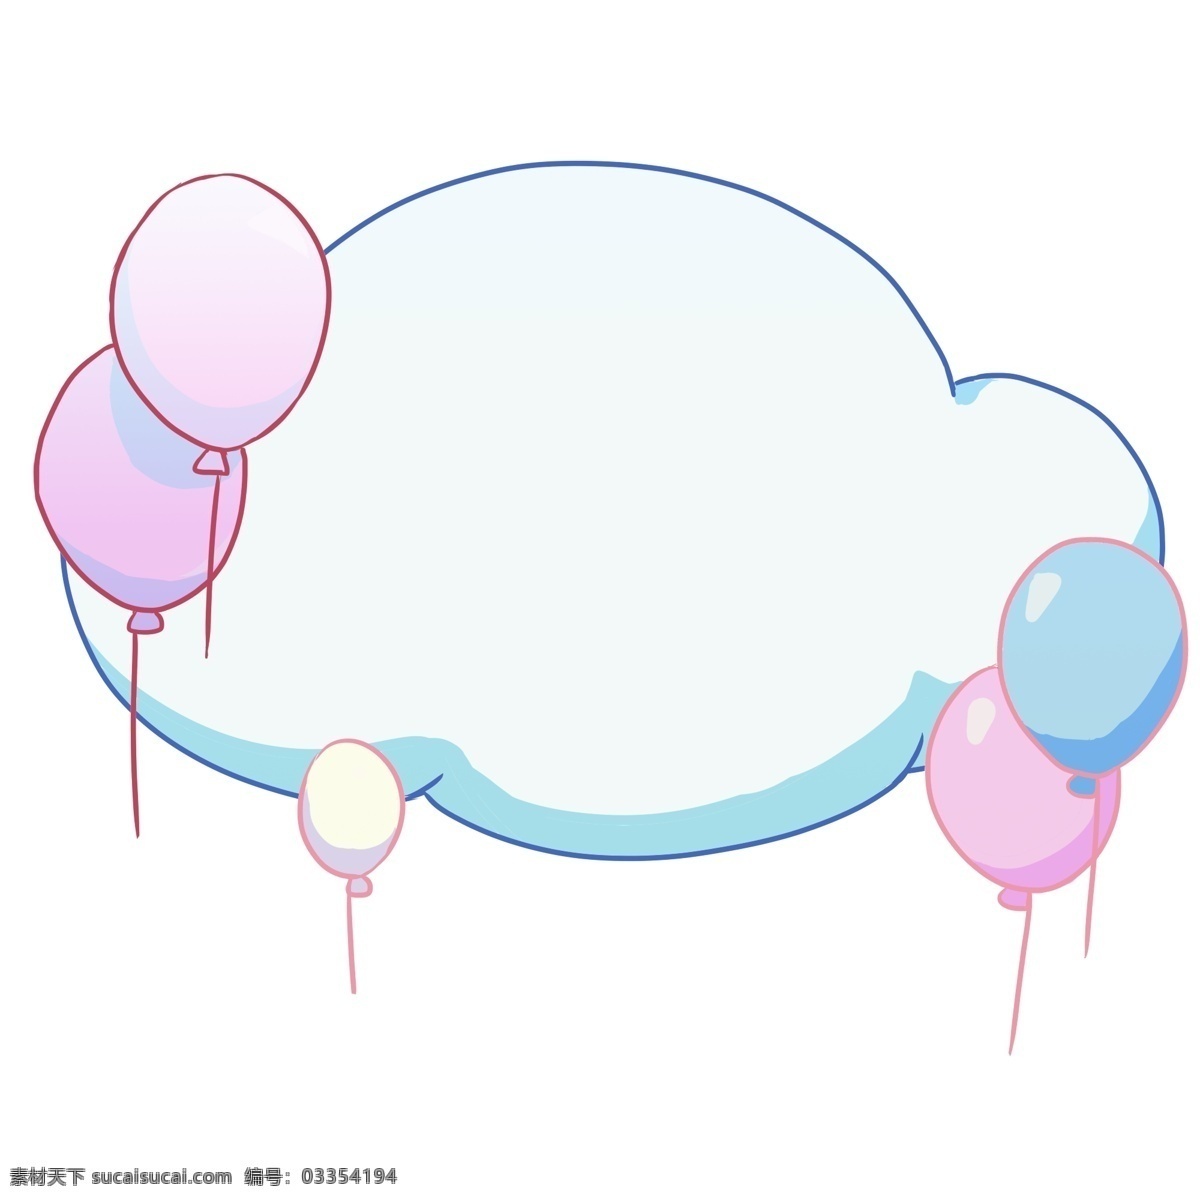 紫色 气球 对话框 插画 漂亮 手绘 卡通 装饰